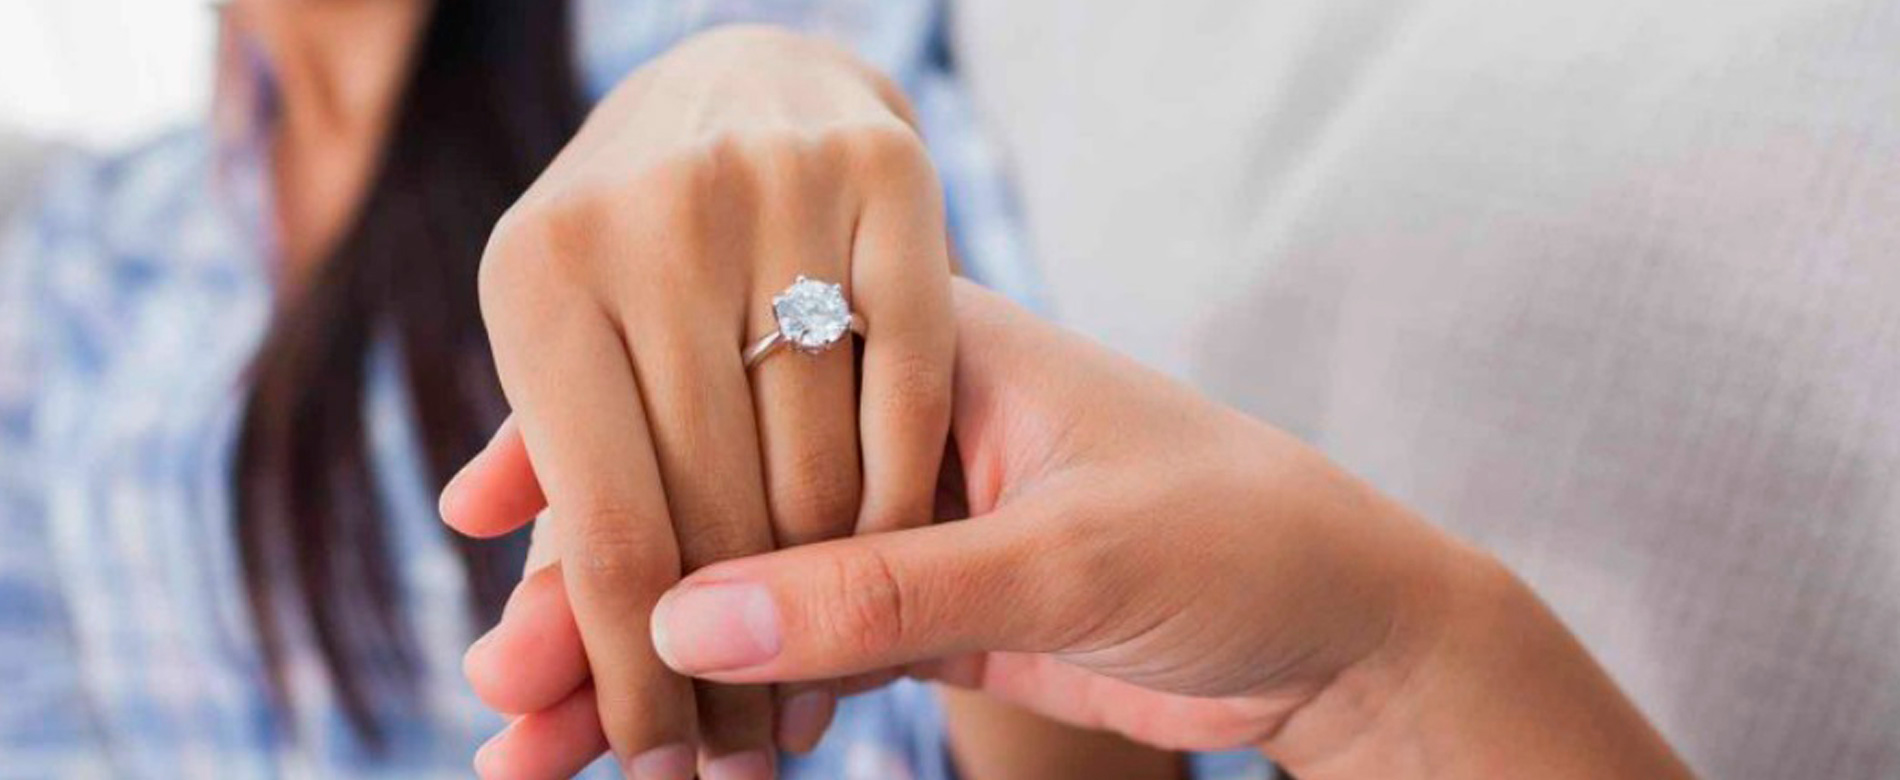 Resposta aos Internautas – “Devo ou não casar com o meu noivo incrédulo?”